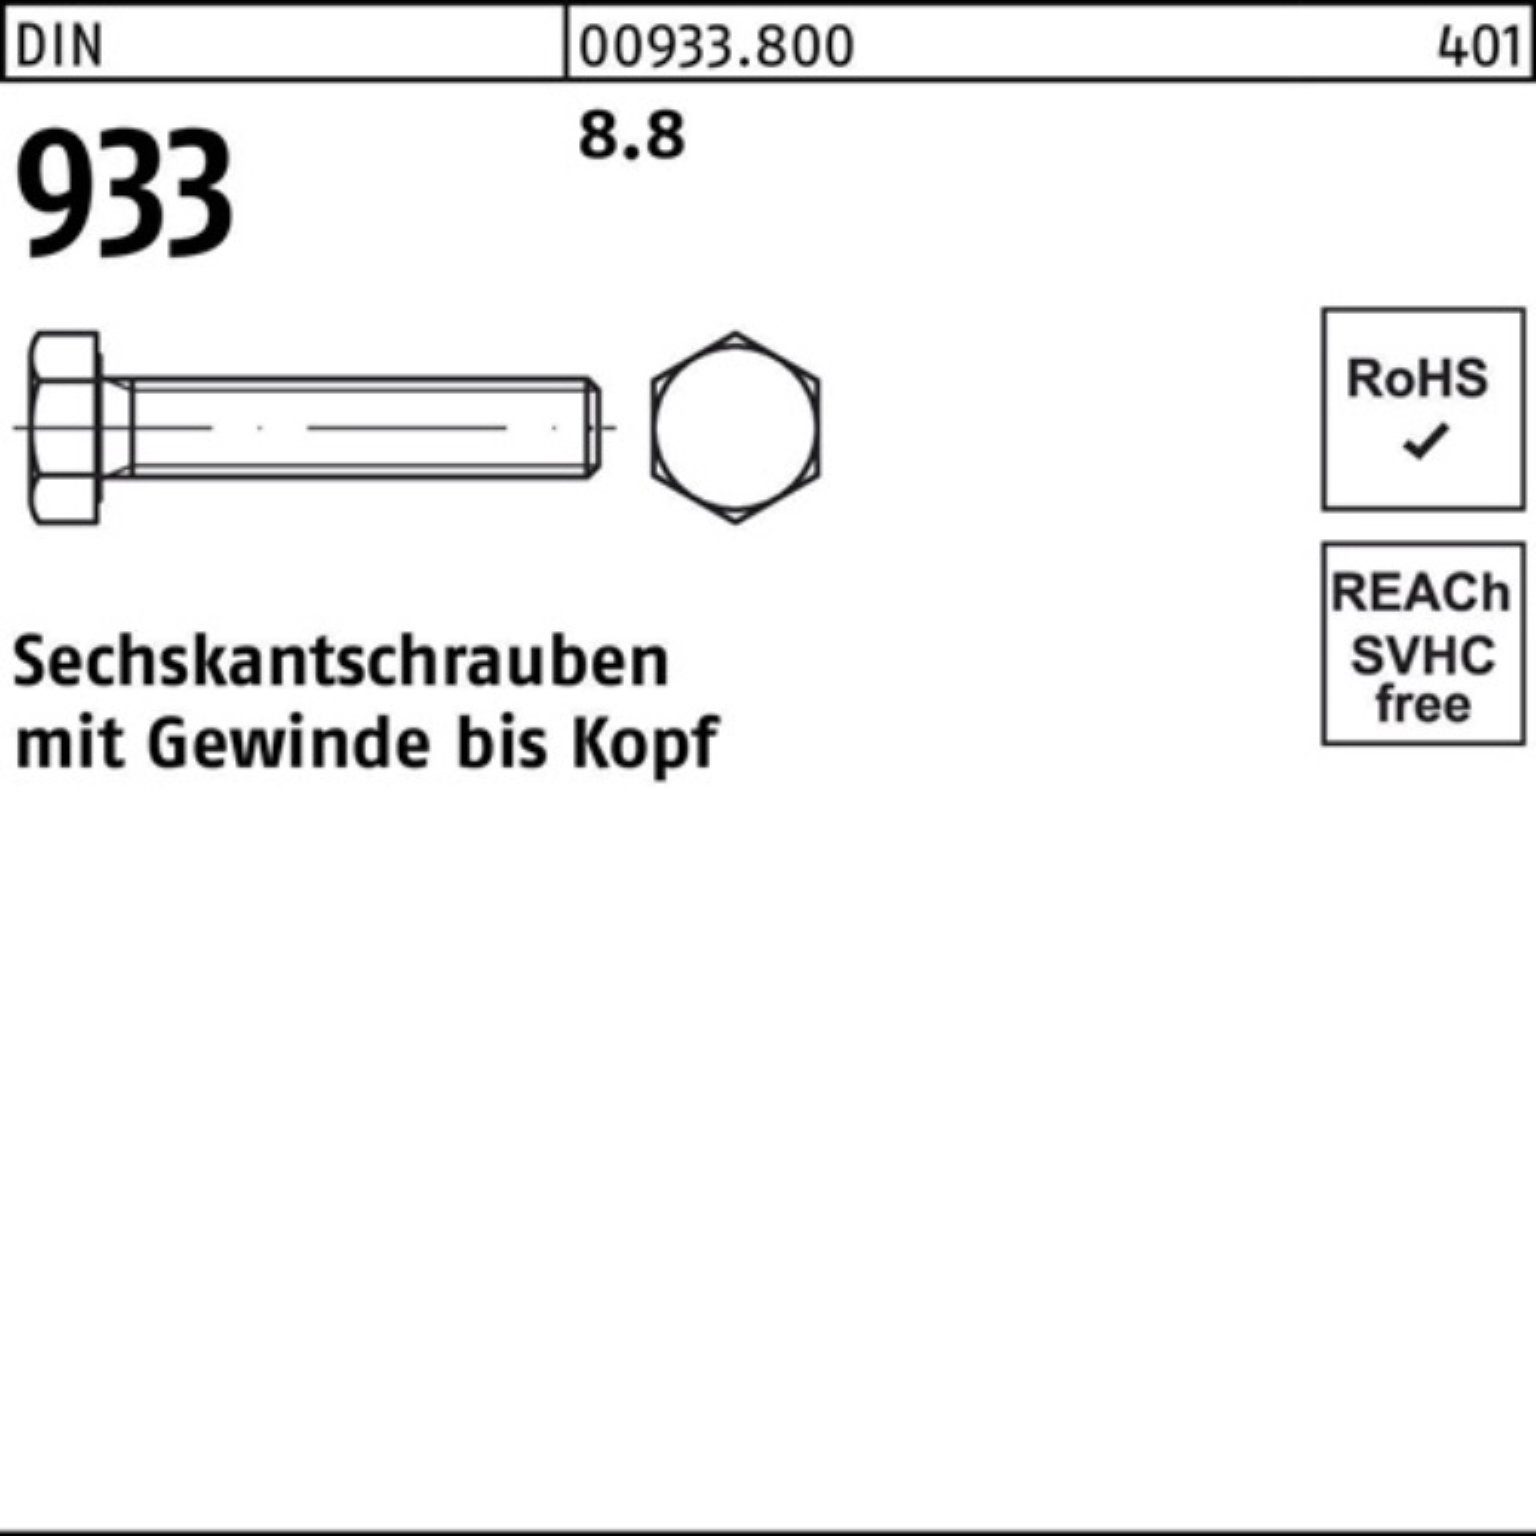 DIN Sechskantschraube Sechskantschraube M24x 8.8 VG DIN Pack 1 933 933 100er Stück Reyher 500